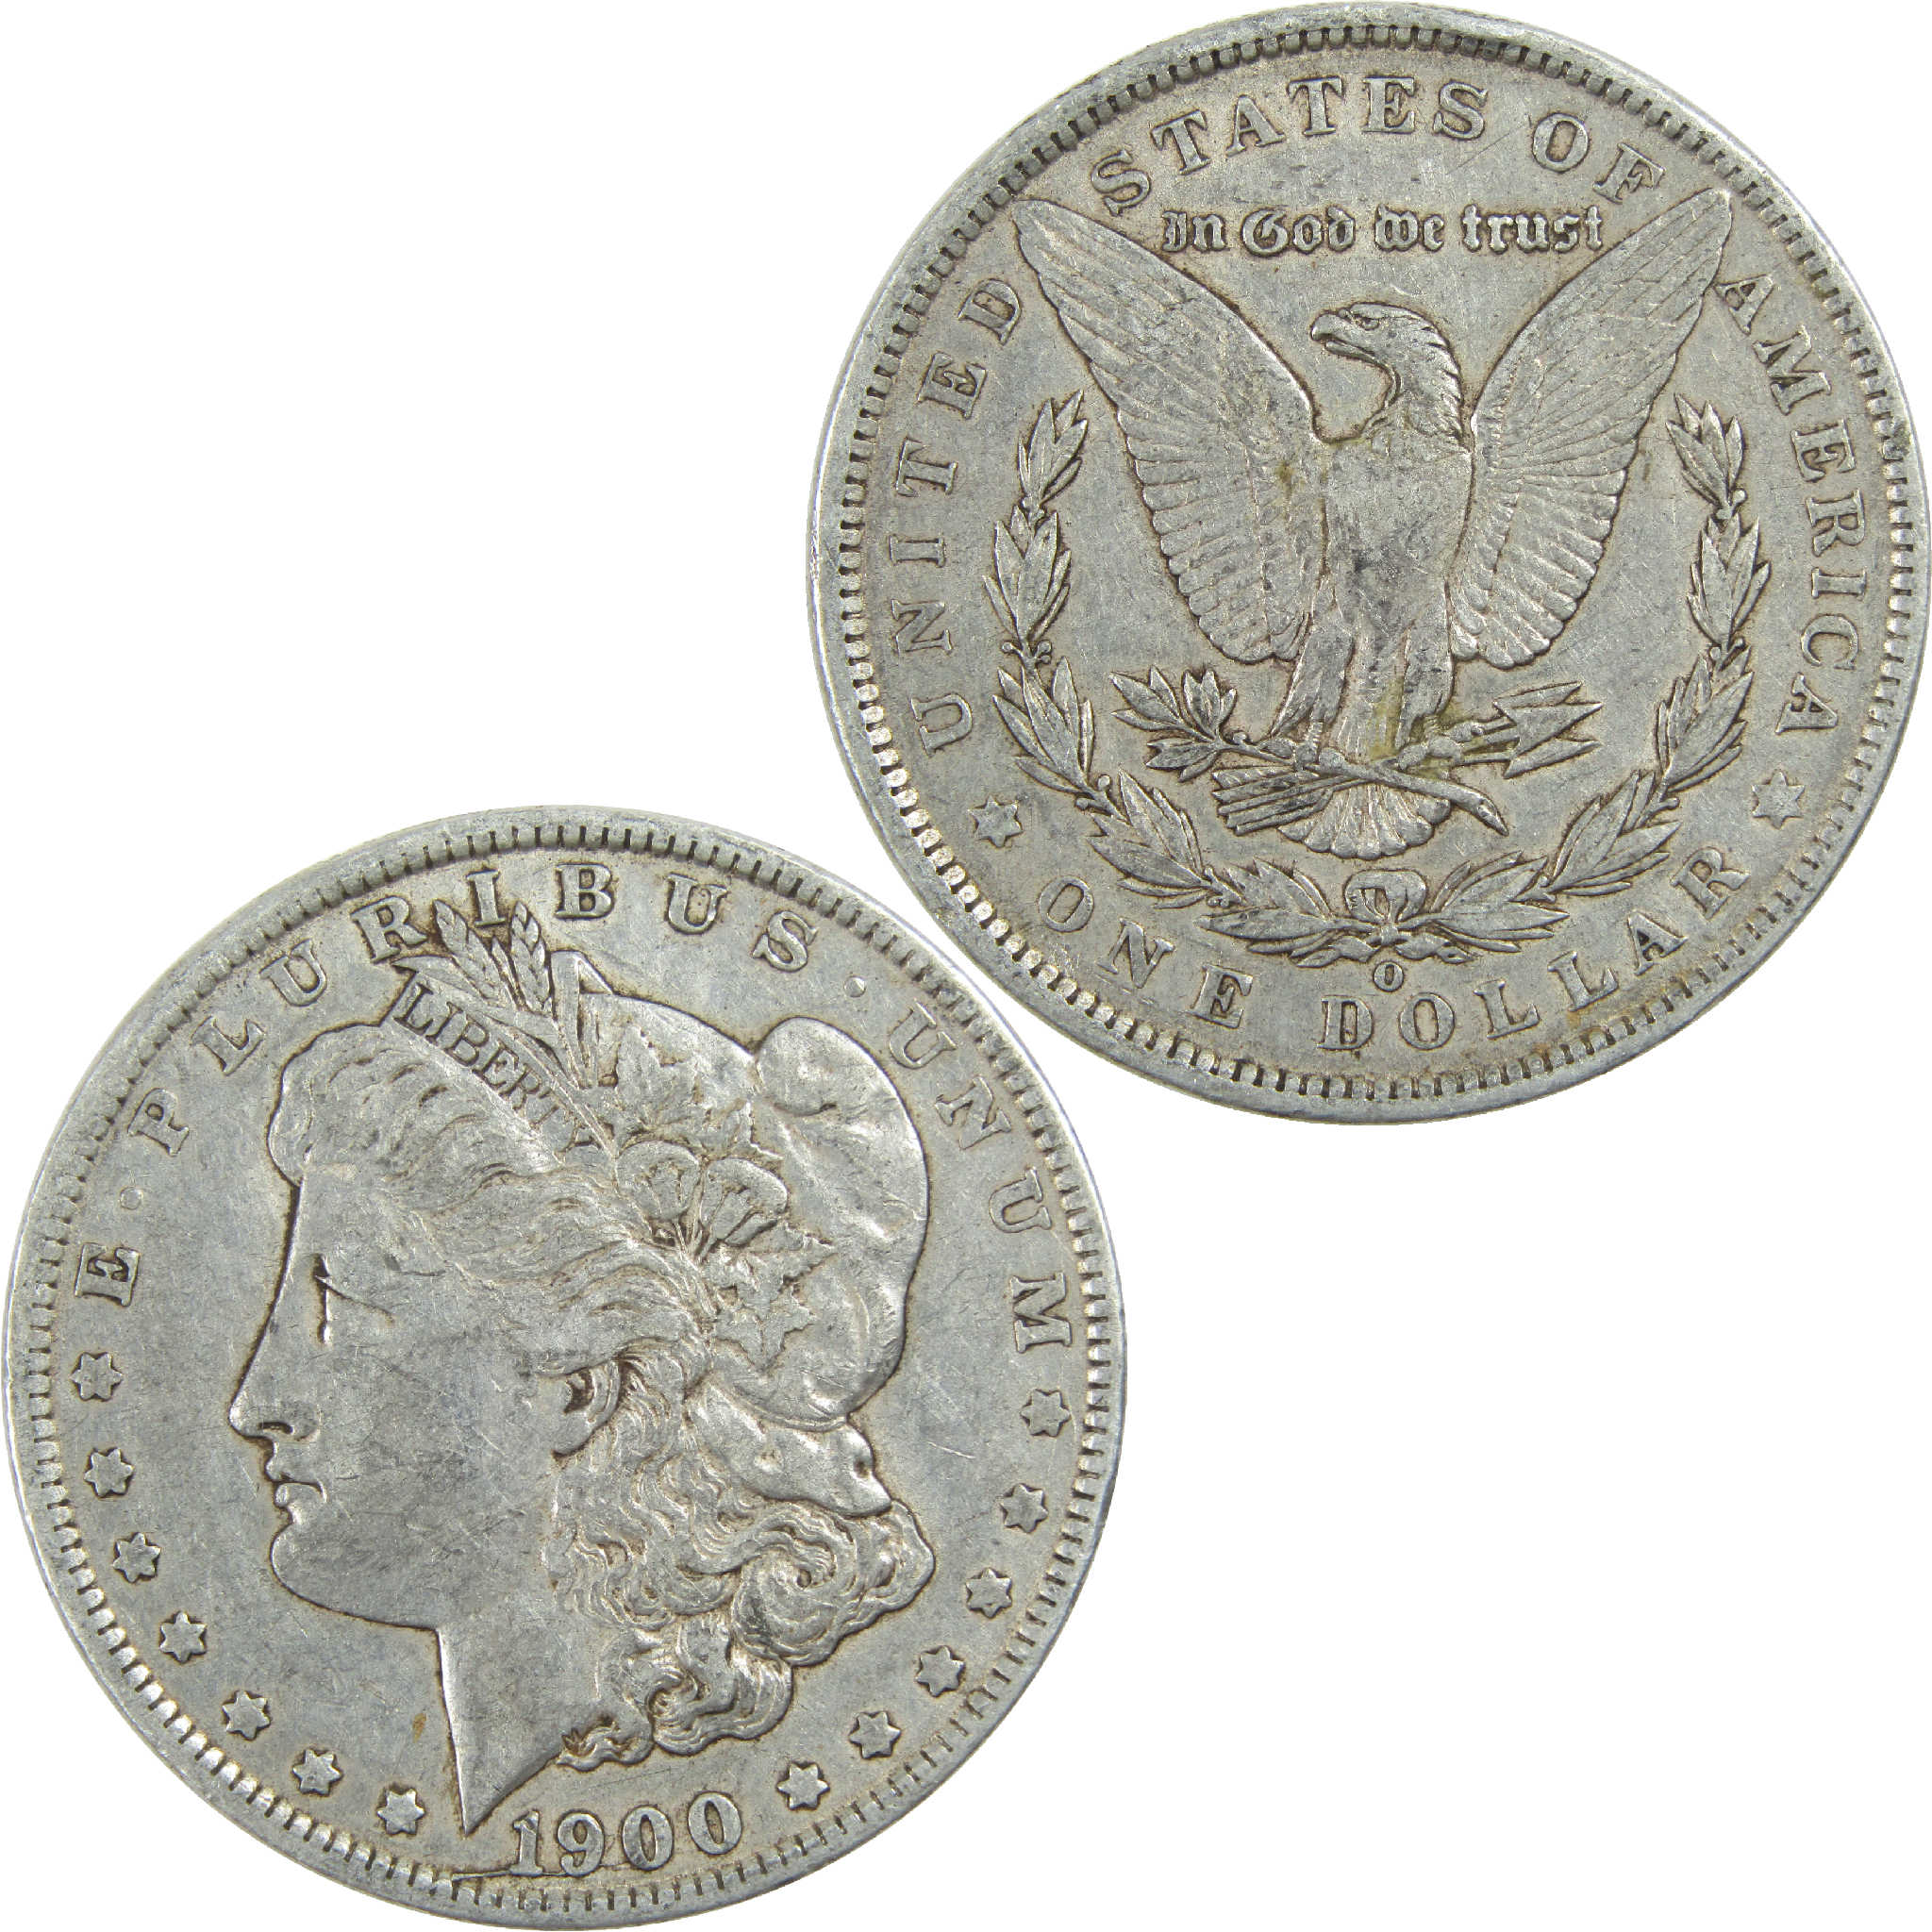 1900 O Morgan Dollar VF Very Fine Silver $1 Coin SKU:I13229 - Morgan coin - Morgan silver dollar - Morgan silver dollar for sale - Profile Coins &amp; Collectibles